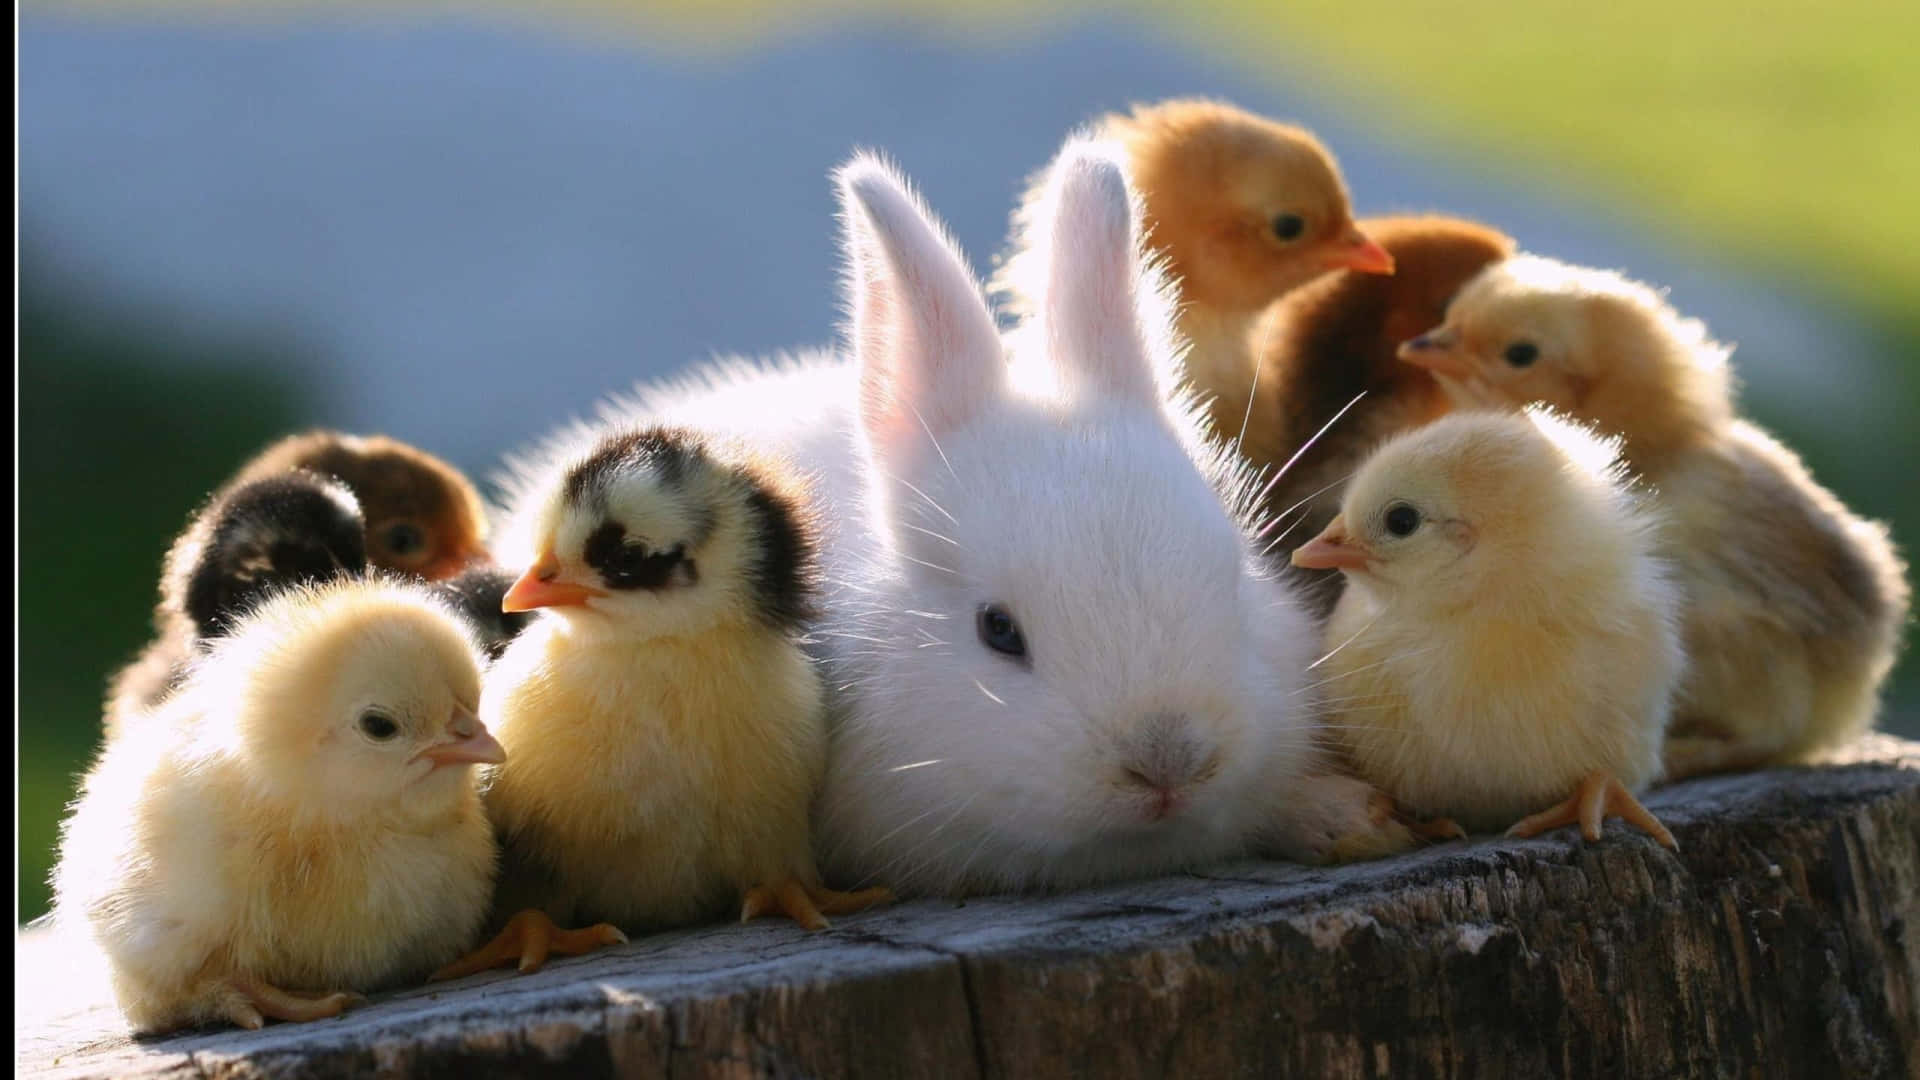 Sødtbillede Af Kanin Og Ællinger